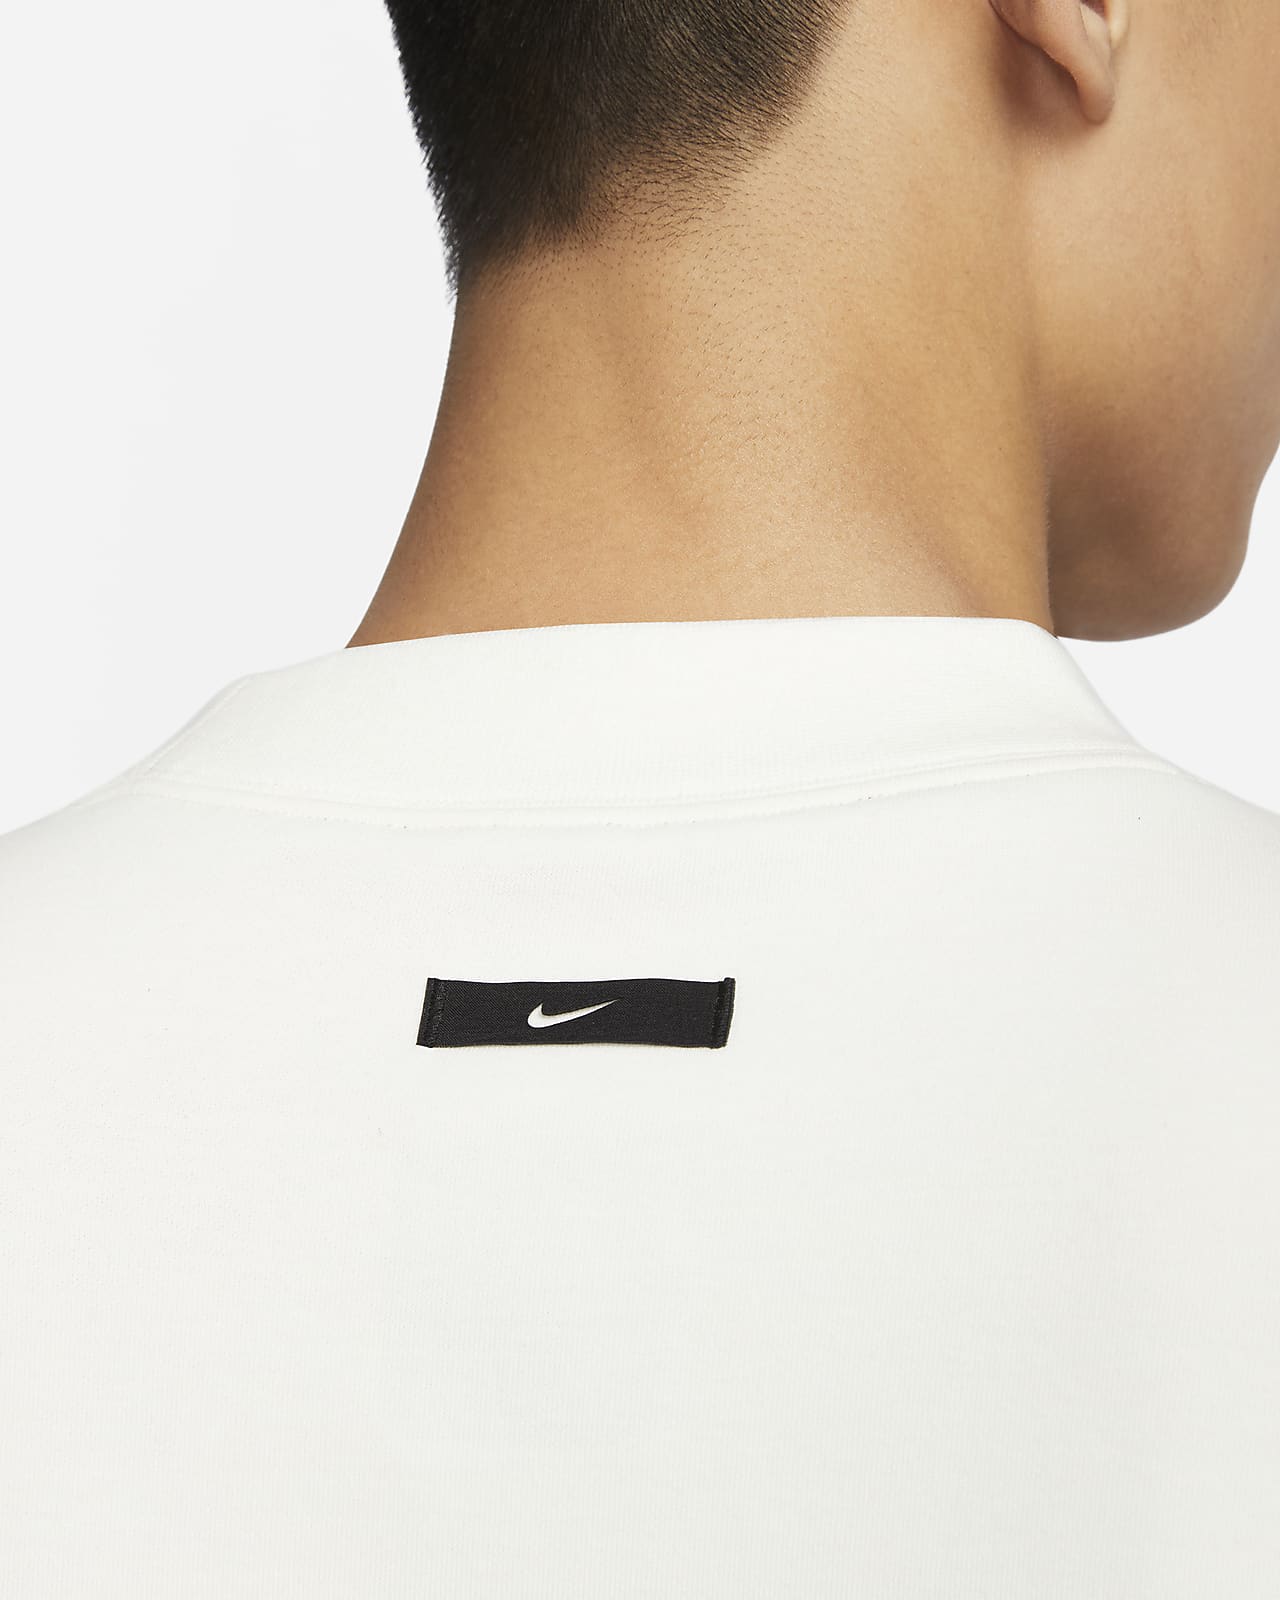 Nike TECH Fleece RI S/S TOP Tops 新品 M L 18% cm ライン